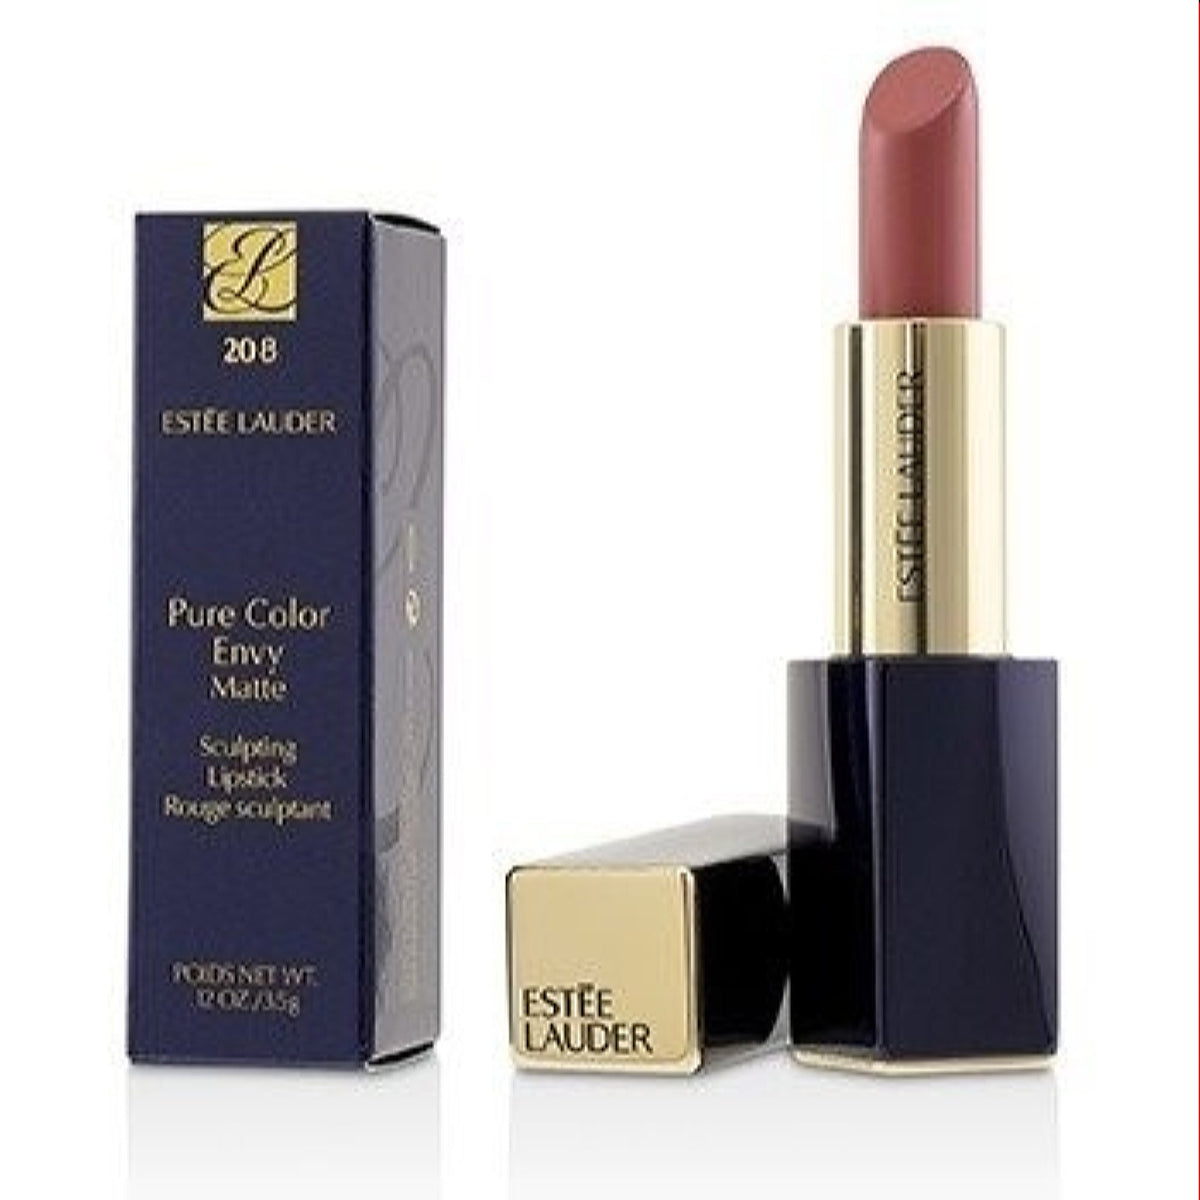 Estee Lauder Pure Color Envy Sculpting Lipstick 208 Blush Crush 0.12 Oz  RBFC-22